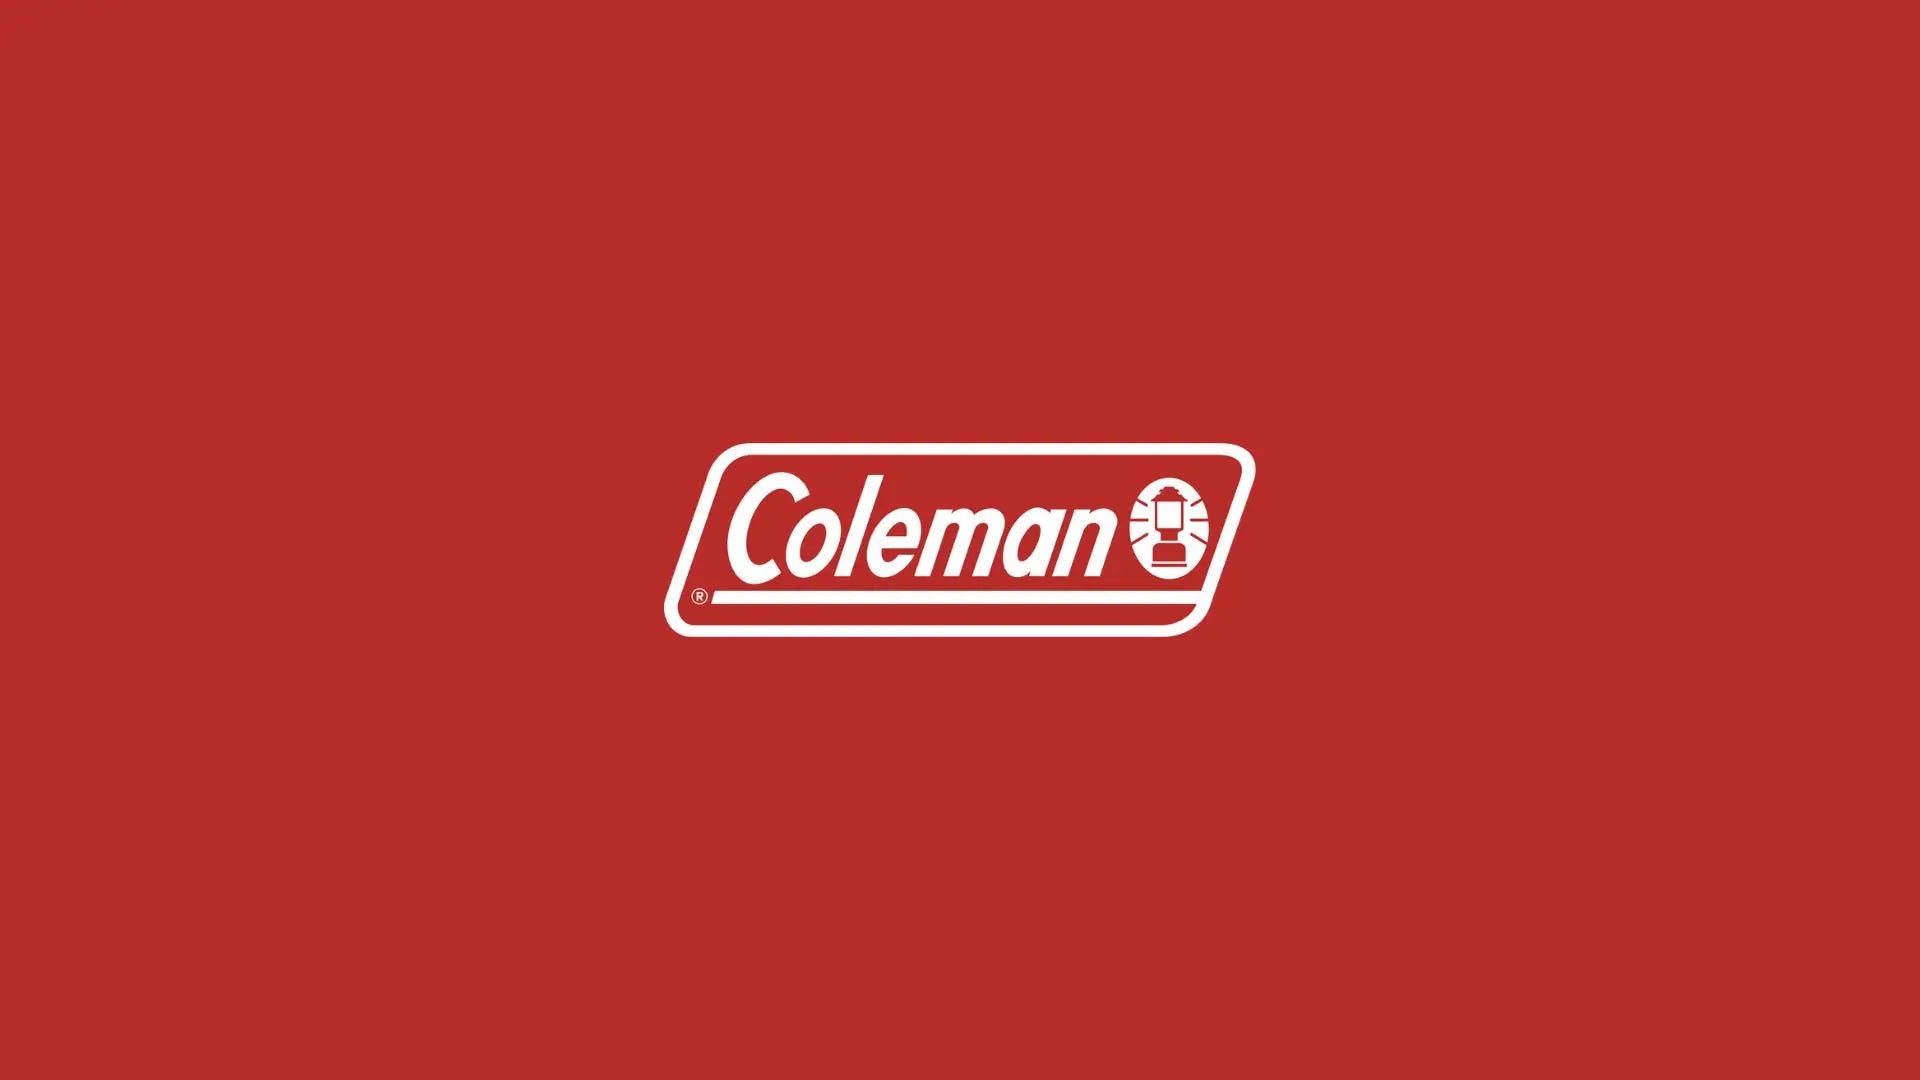 Coleman yapcr.com Costa Rica